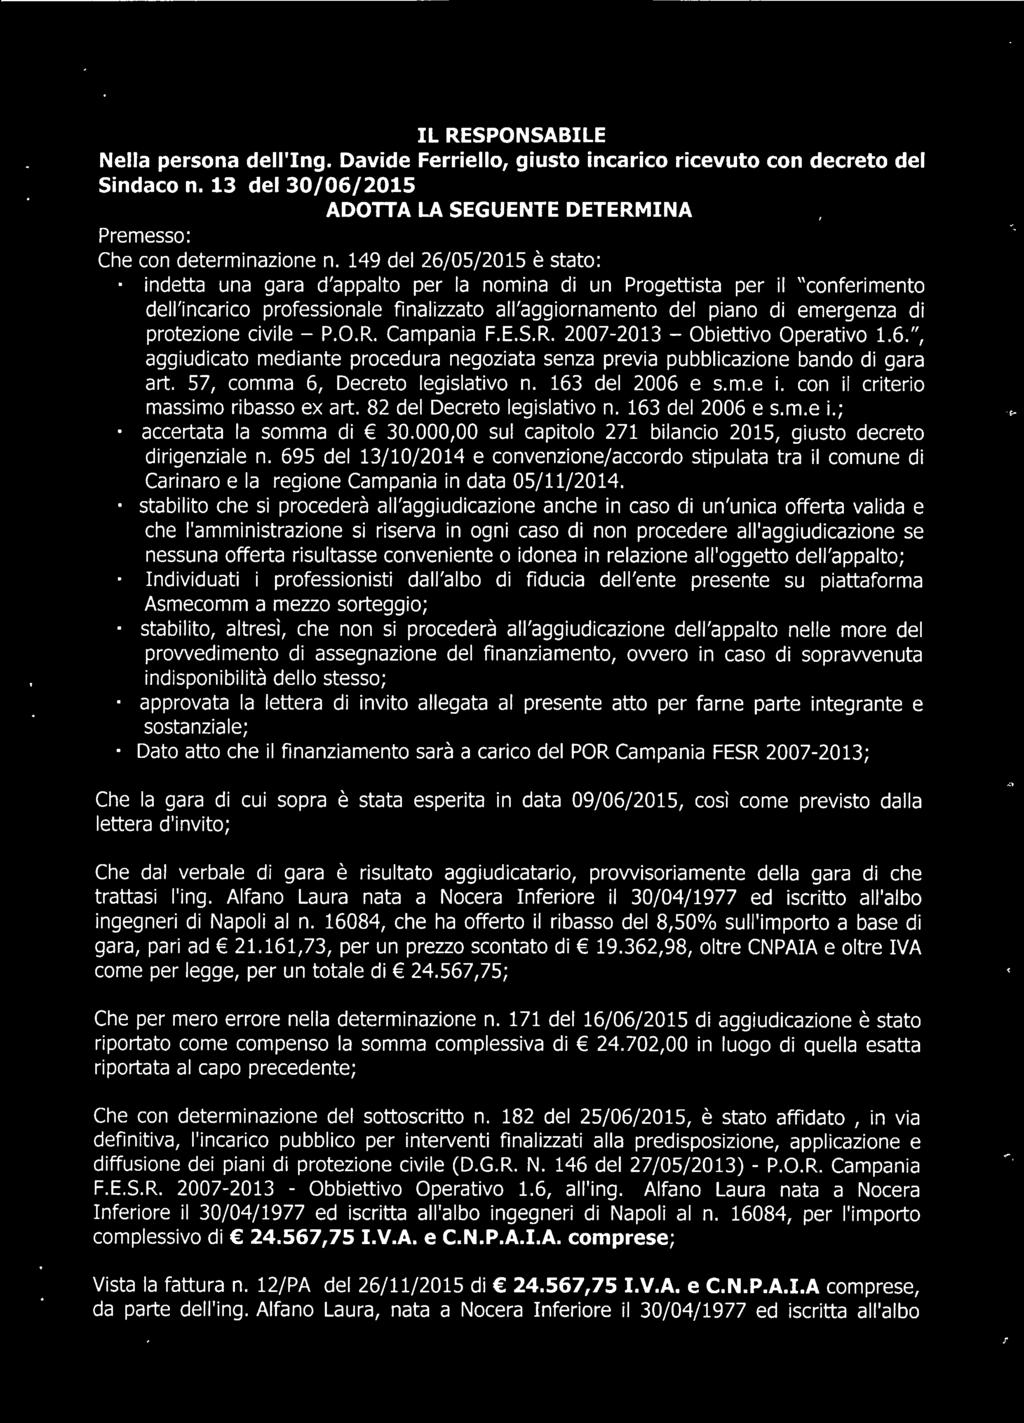 protezione civile - P.O.R. Campania F.E.S.R. 2007-2013 - Obiettivo Operativo 1.6.", aggiudicato mediante procedura negoziata senza previa pubblicazione bando di gara art.